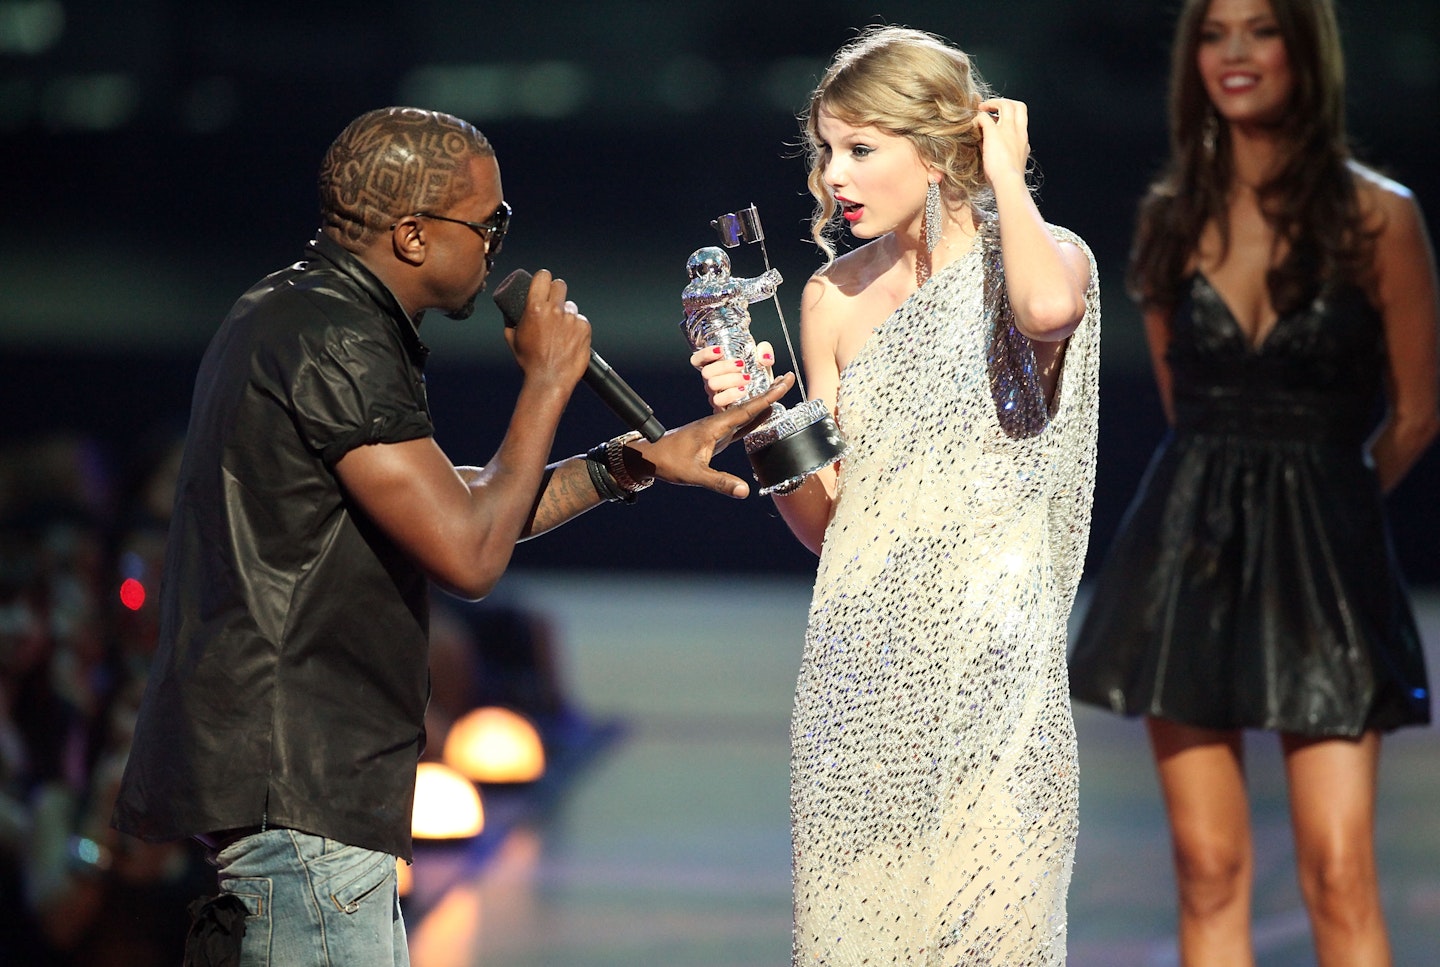 Kanye West and Taylor Swift at MTV VMAs 2009